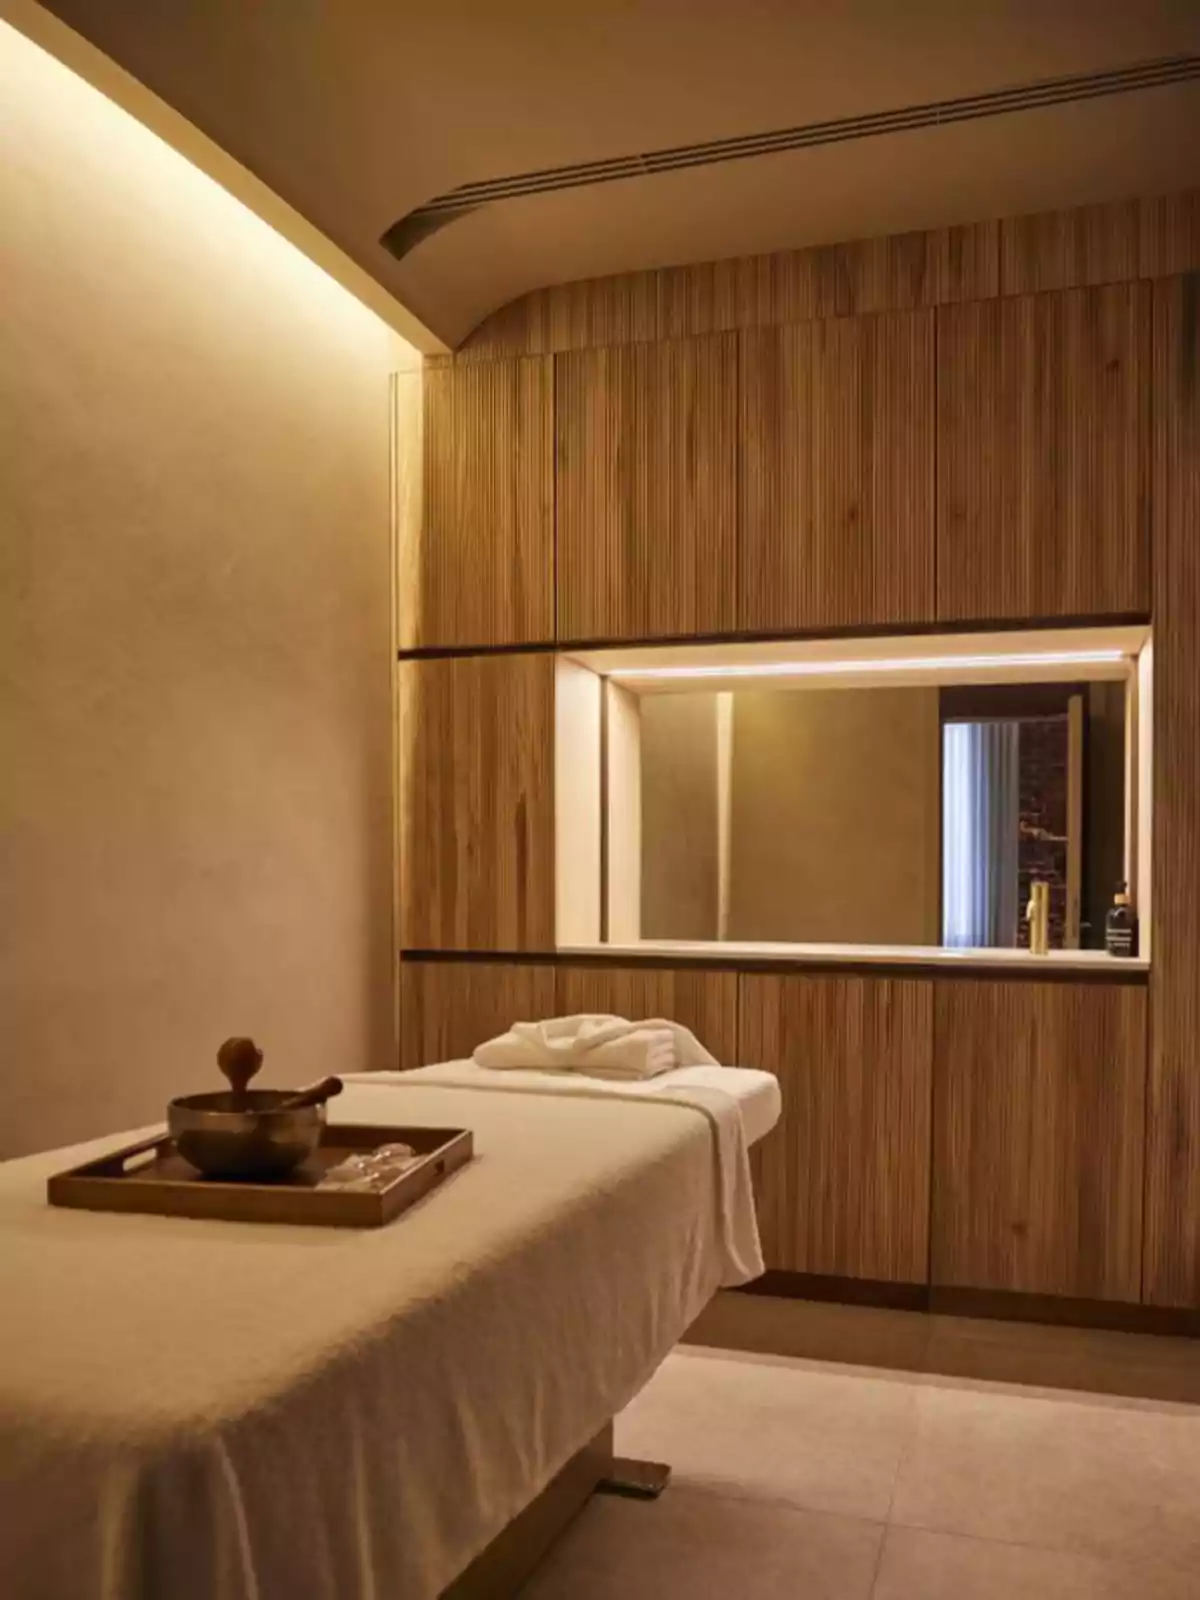 Sala de masajes con iluminación cálida, mesa de masaje cubierta con una toalla blanca y una bandeja con utensilios sobre ella, paredes y muebles de madera.